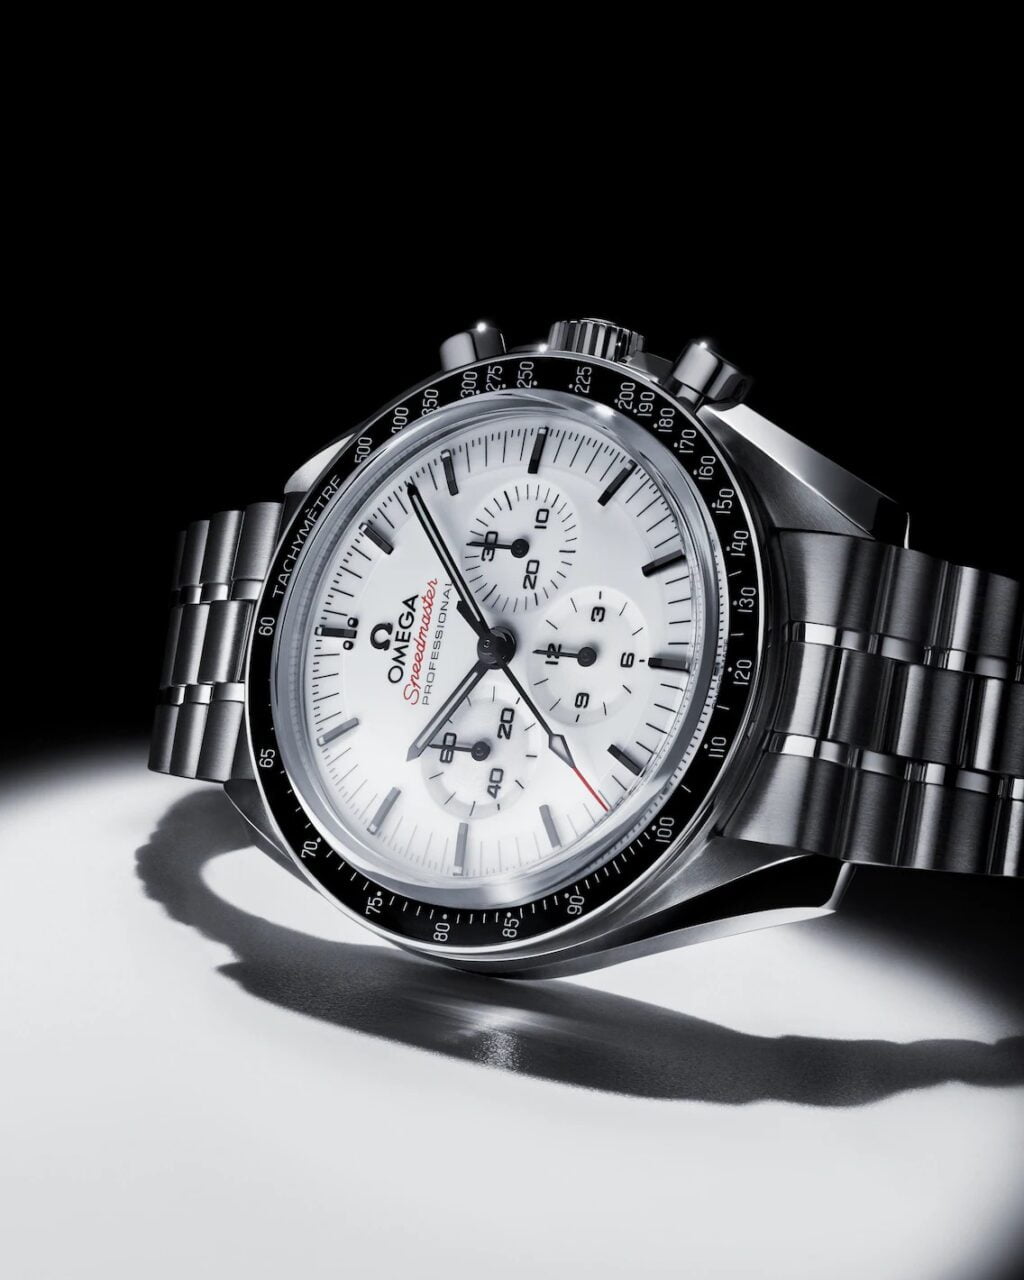 Zegarek męski Omega na metalowym pasku z białą tarczą, chronografem i czarnymi oznaczeniami, położony na białej powierzchni z cieniem.